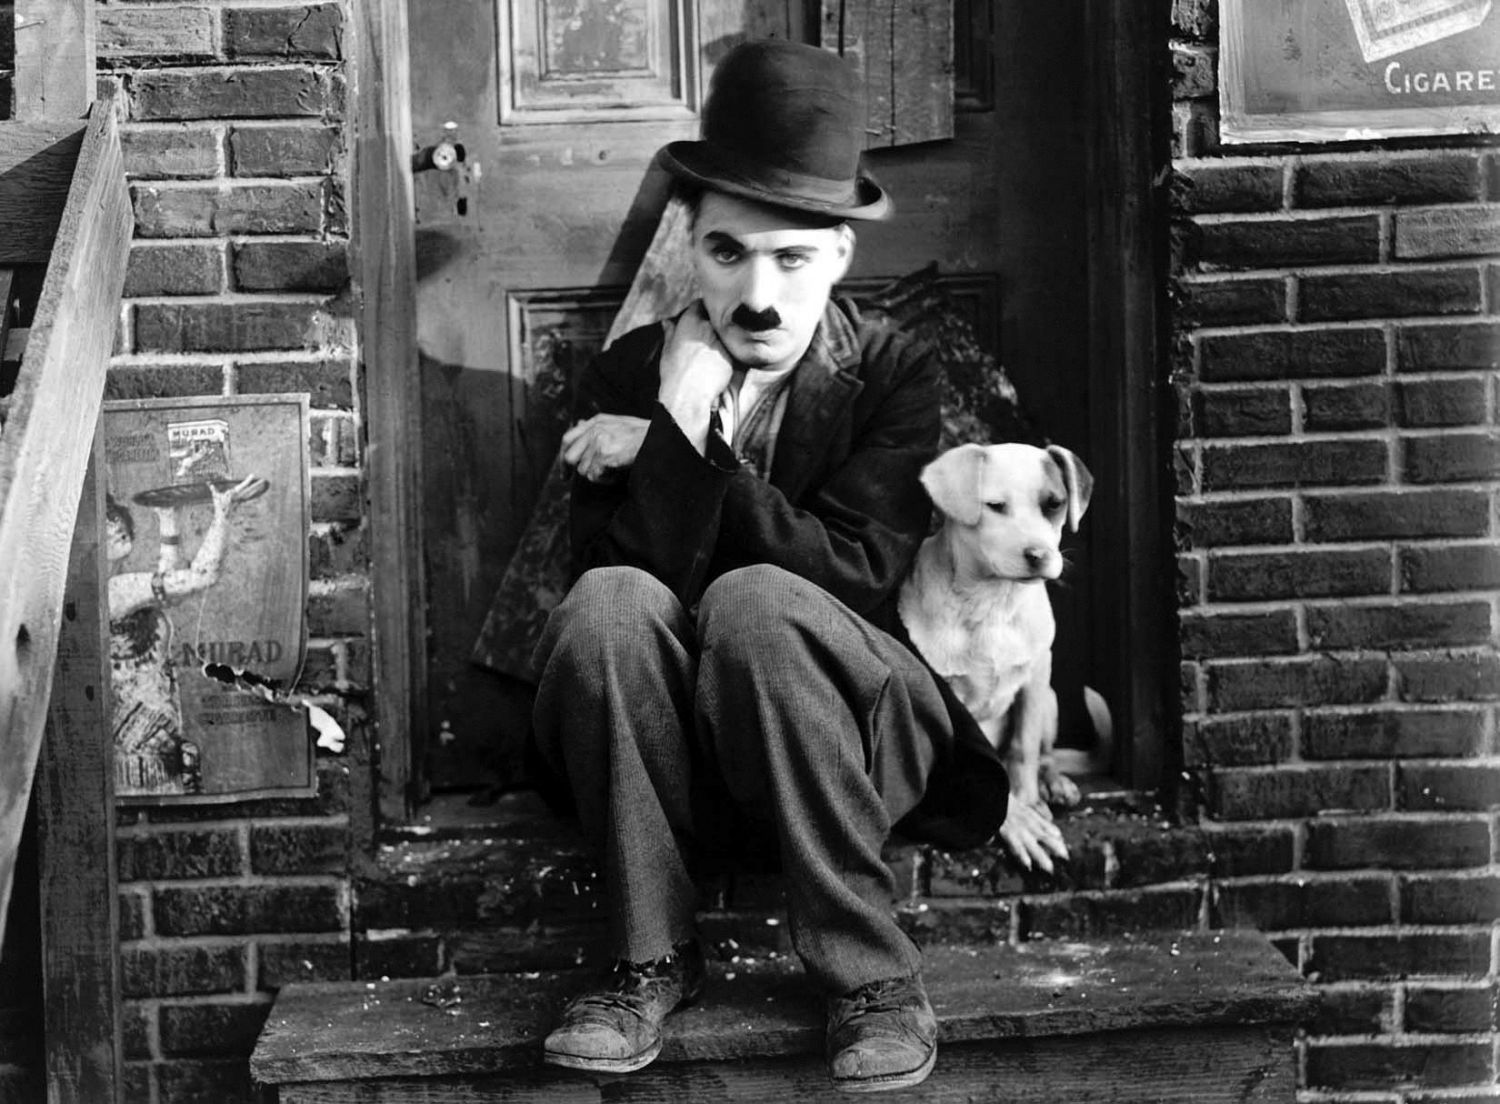 Скачать обои Чарли Чаплин на телефон бесплатно